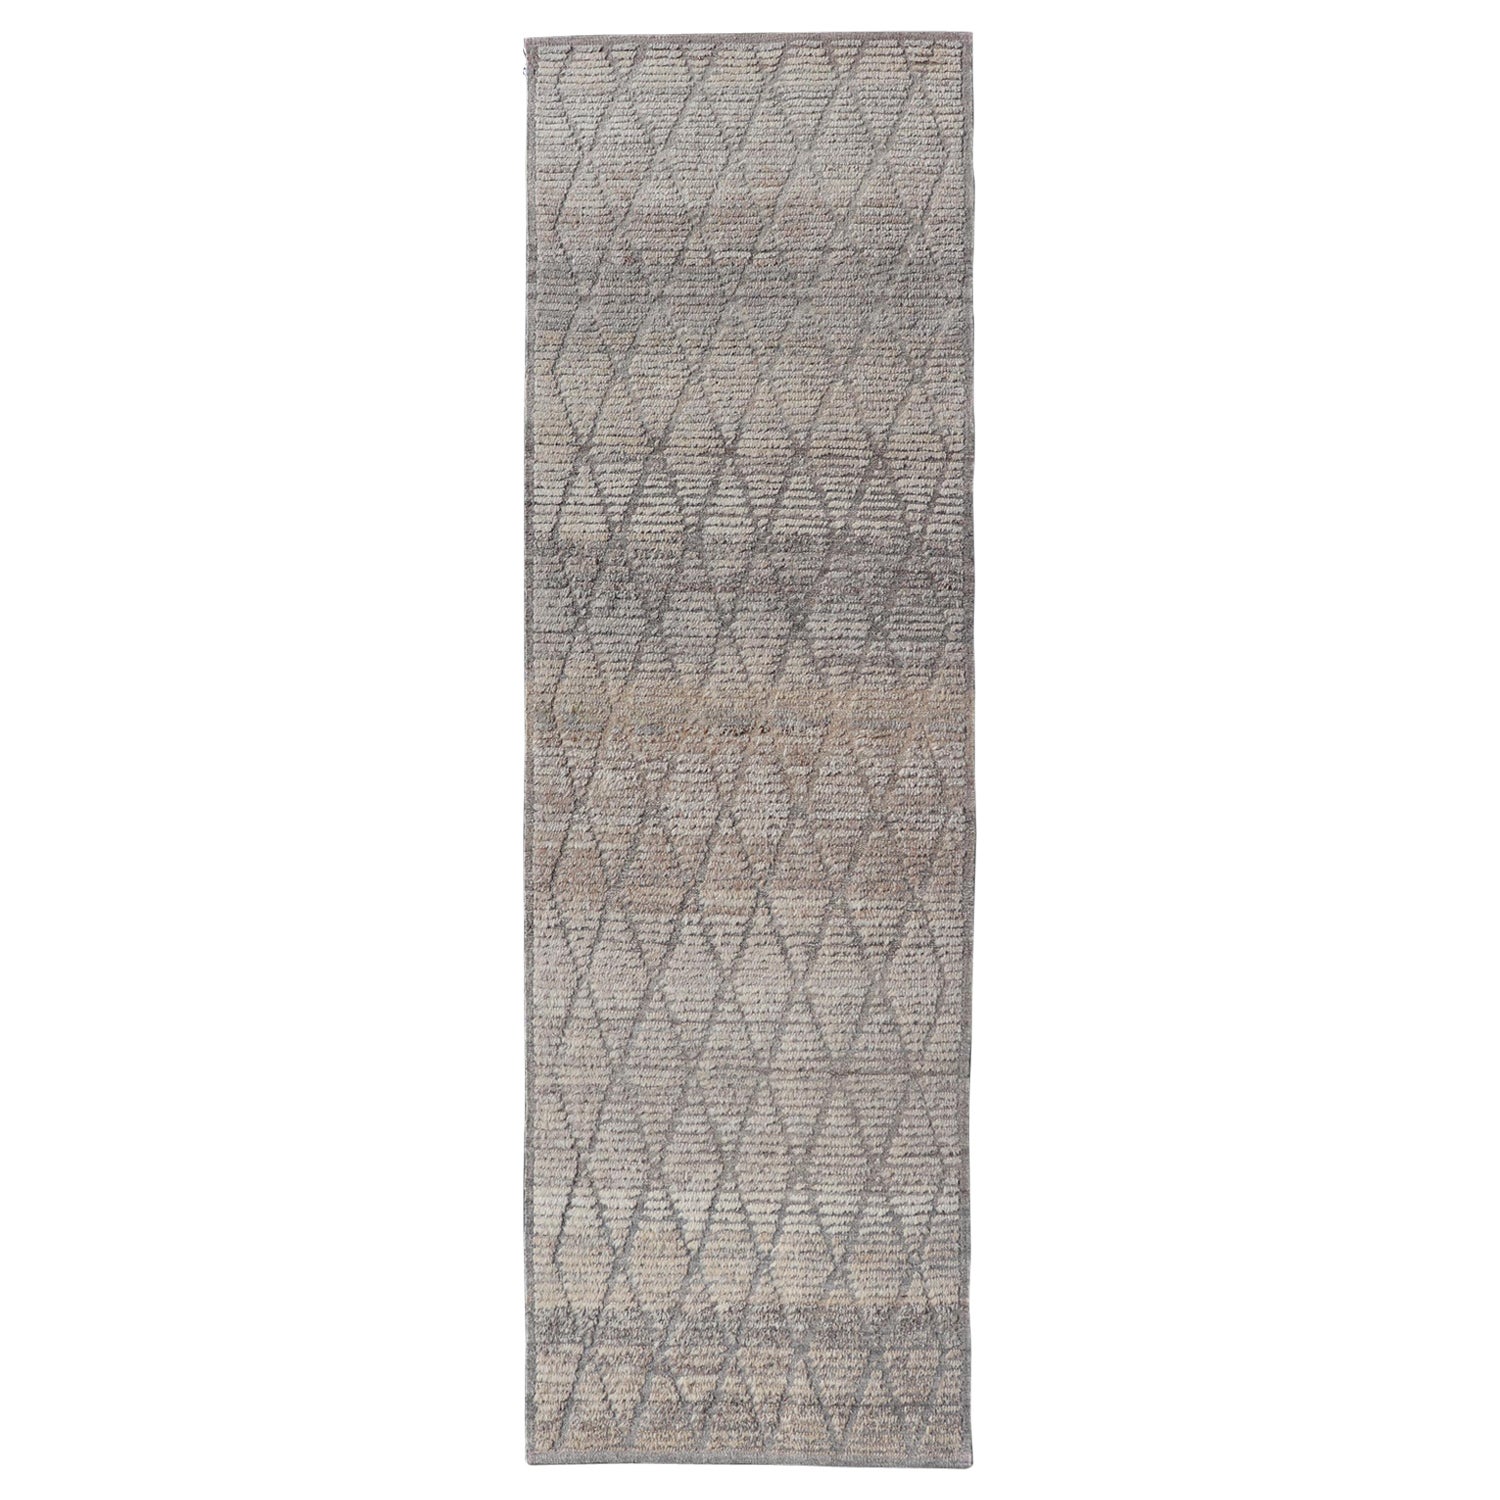 Moderner moderner handgeknüpfter marokkanischer Teppich mit Diamantmuster in Grau und neutralen Tönen